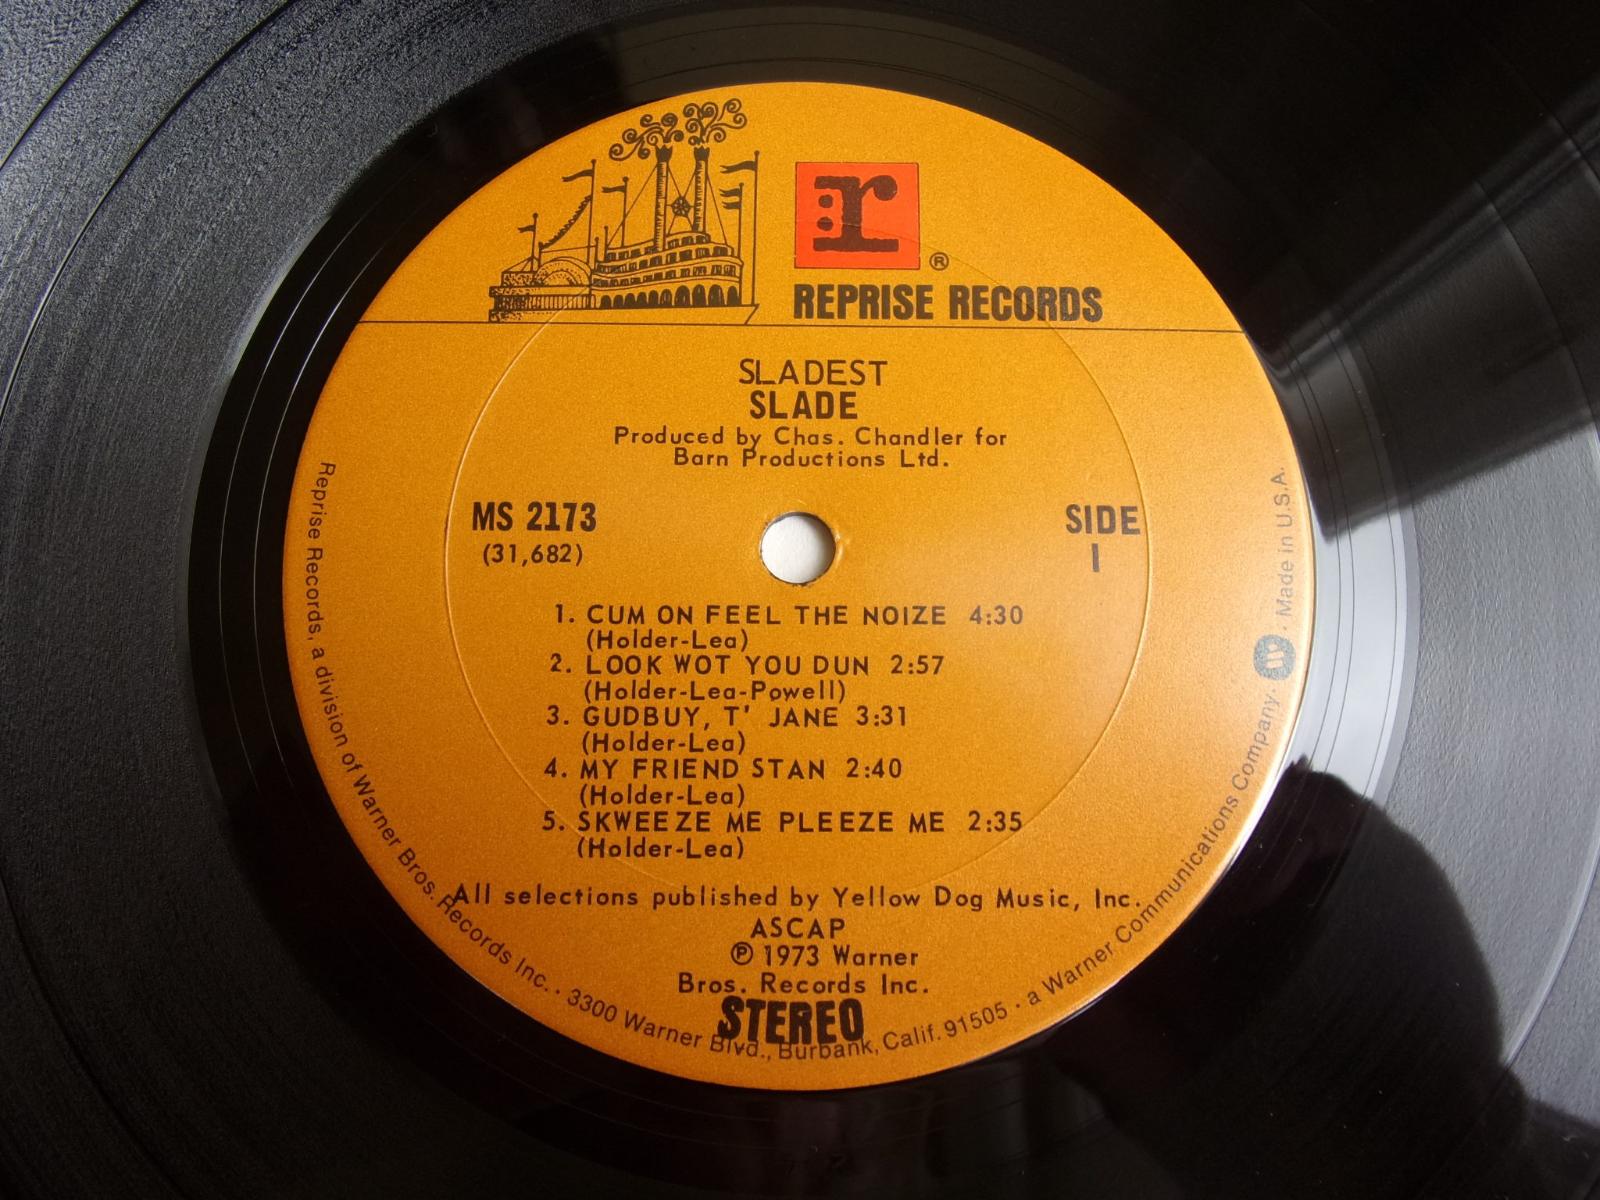 ⭐️ LP: SLADE - SLADEST, original USA vydaní, Je jiné než Evropské!!! - LP / Vinylové desky